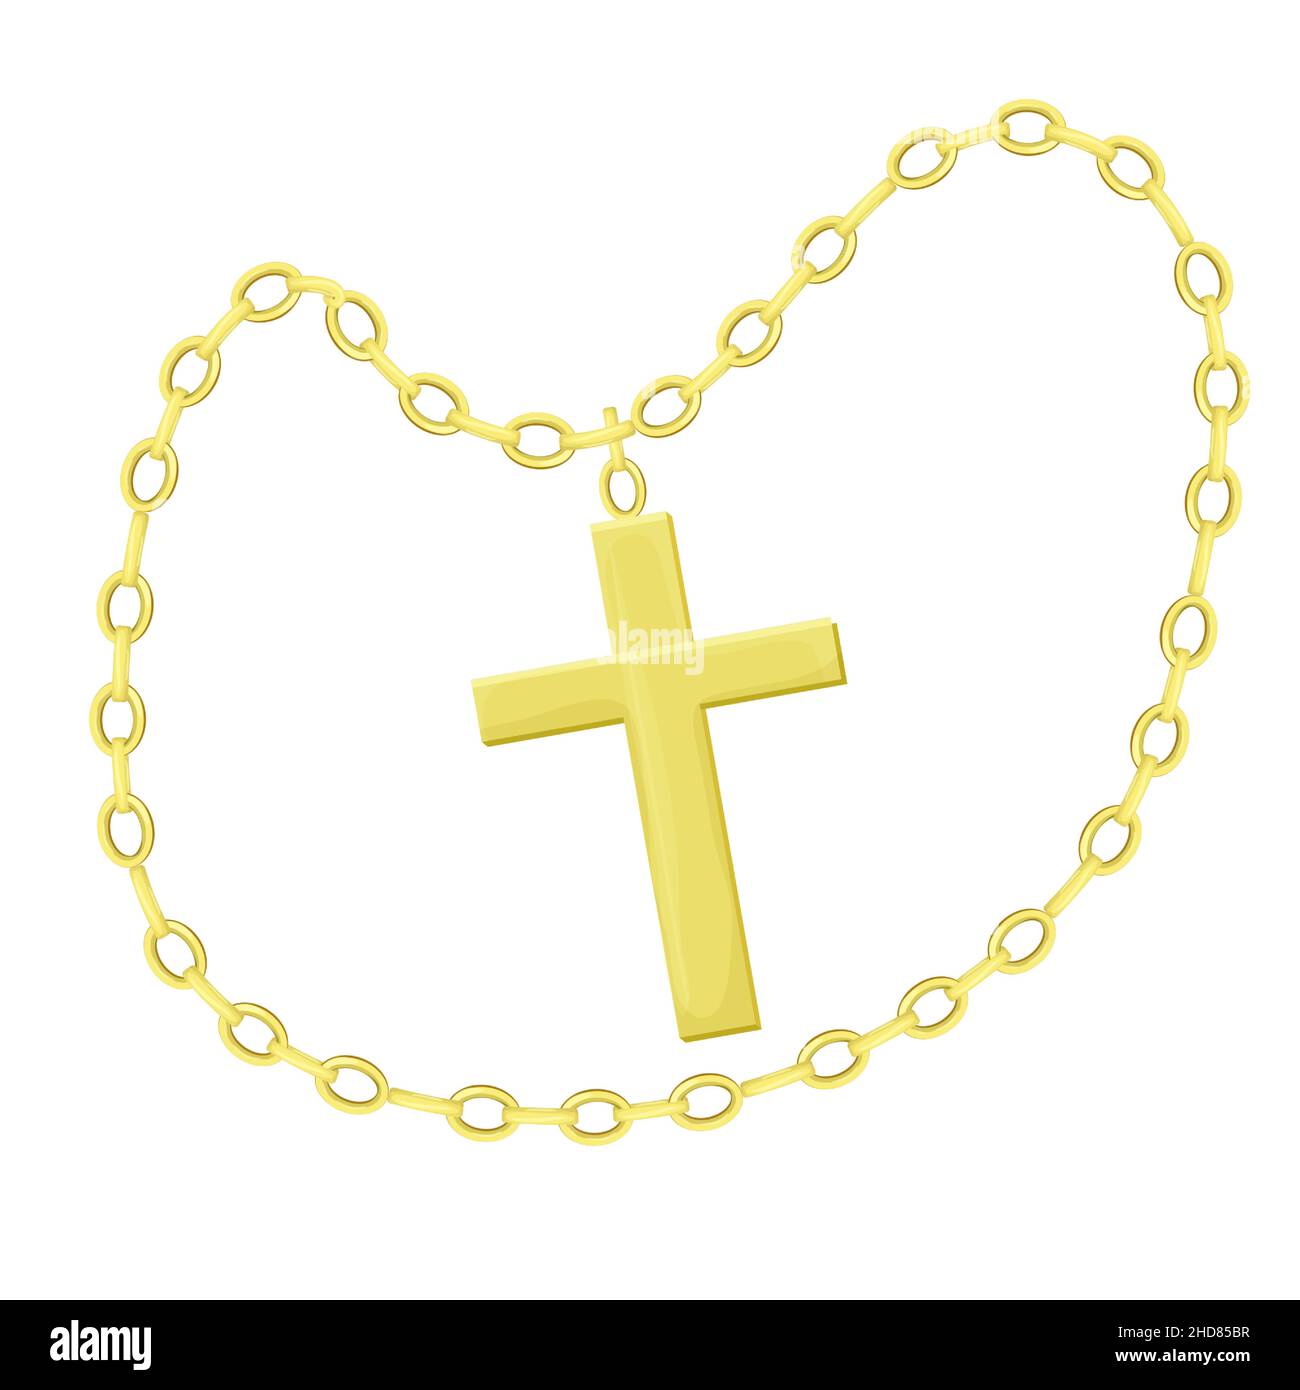 Goldenes Kreuz mit Kette im Cartoon-Stil isoliert auf weißem Hintergrund. Halskette religiösen Schmuck, hängende Accessoires. Vektorgrafik Stock Vektor